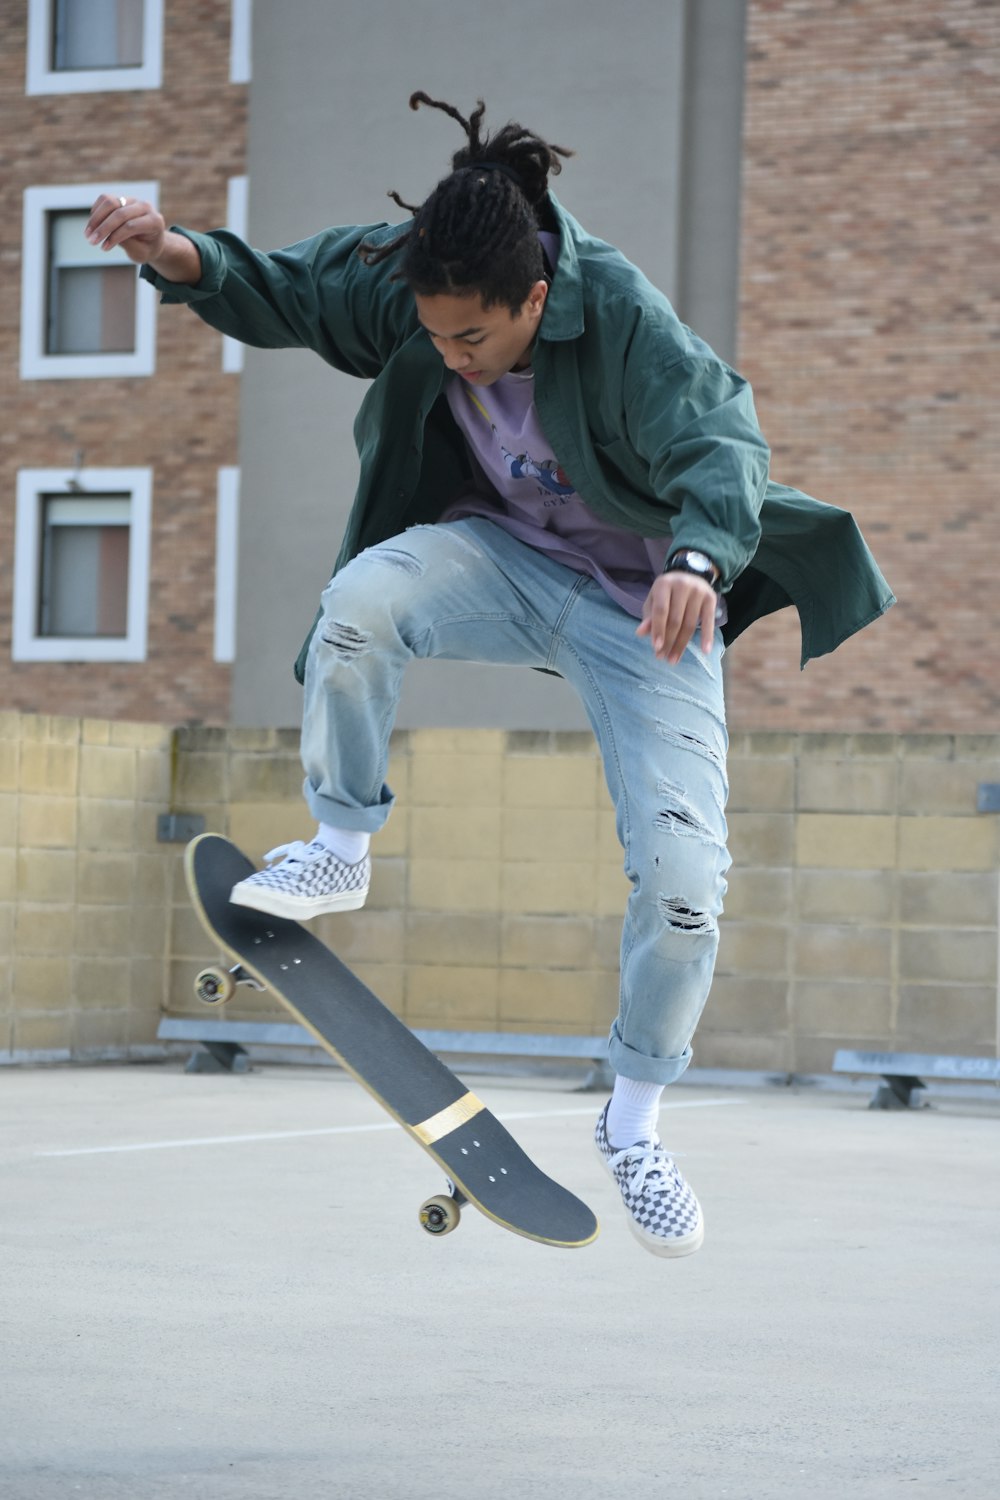 緑のパーカーとブルーデニムジーンズを着た男が昼間、スケートボードに座っている